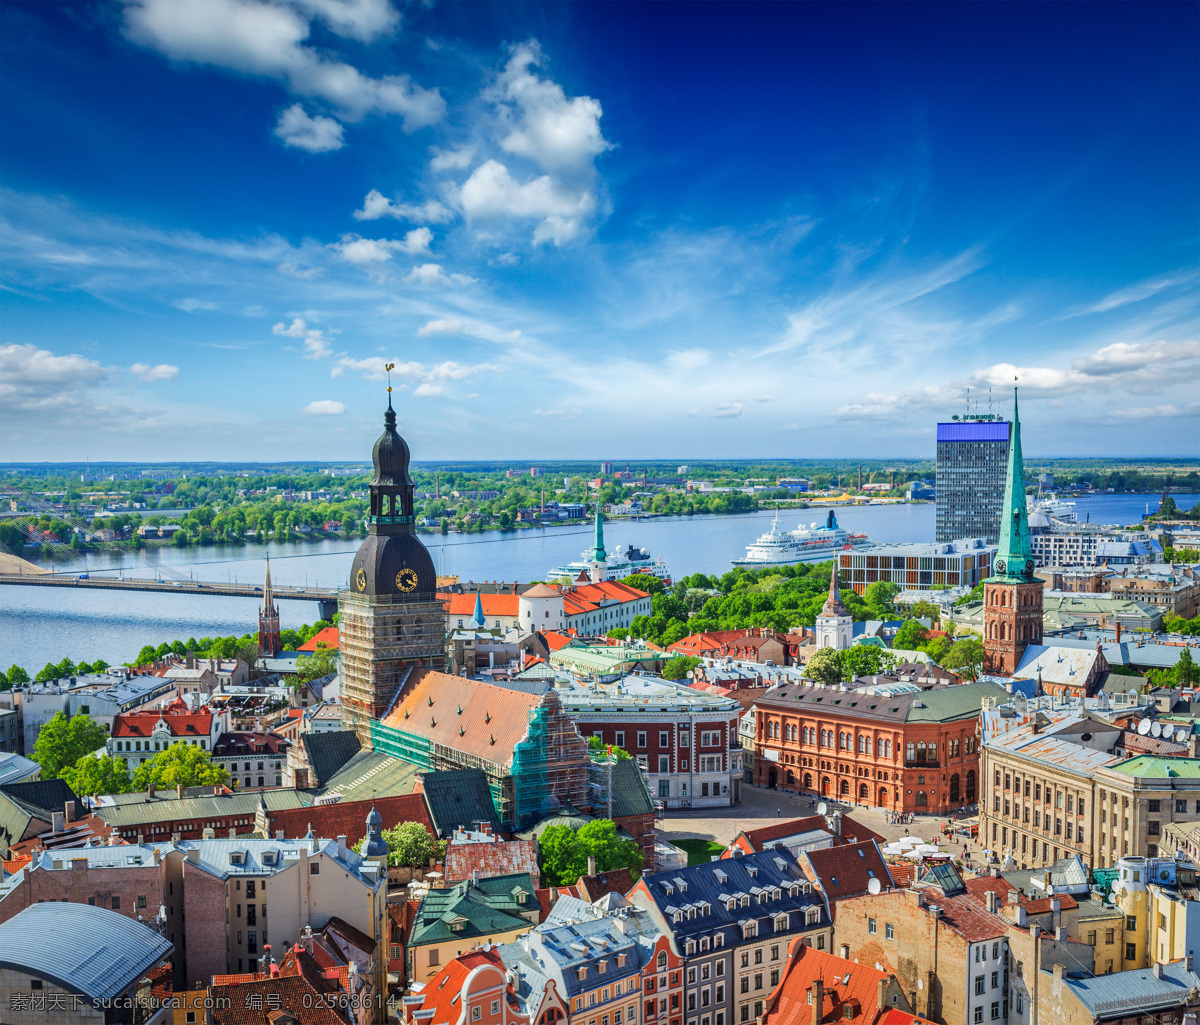 欧洲 小镇 风景 照片 时 钟楼 建筑 河流 蓝天 建筑园林 建筑摄影